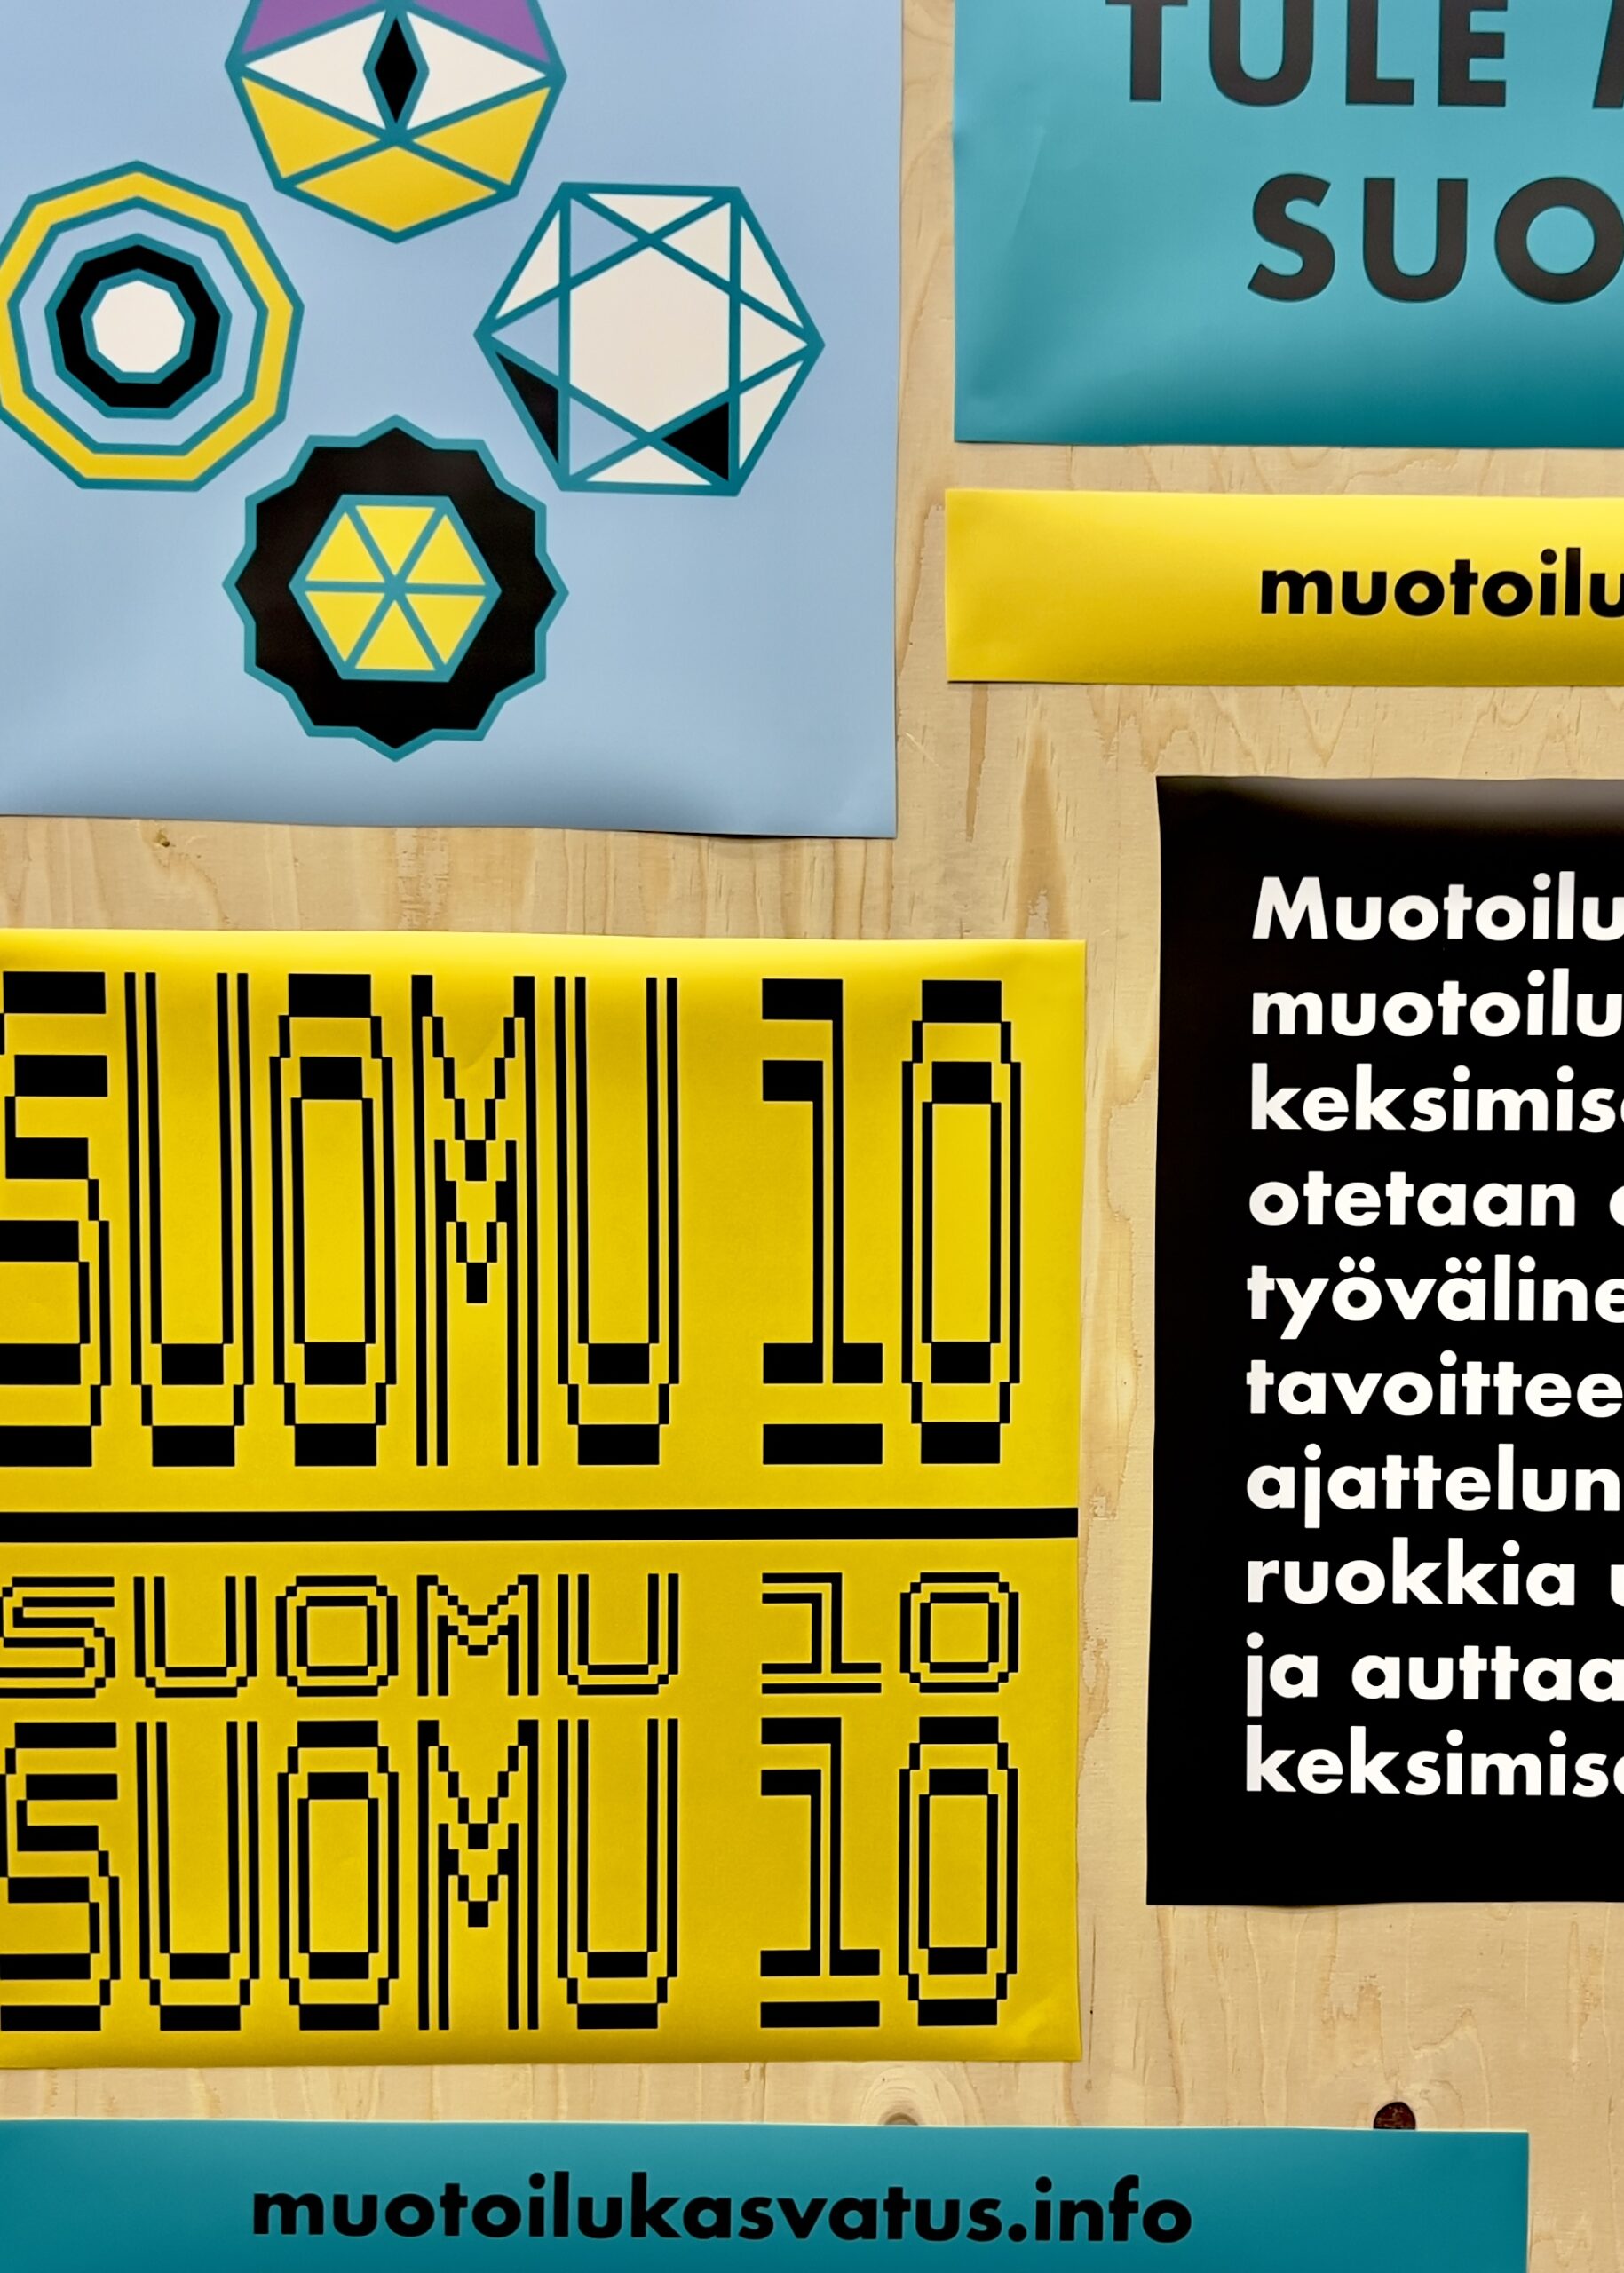 Suomen muotoilukasvatus ry:n – SuoMu:n 10-vuotisjuhlan graafinen ilme. Suomu 10 year anniversary graphic identity